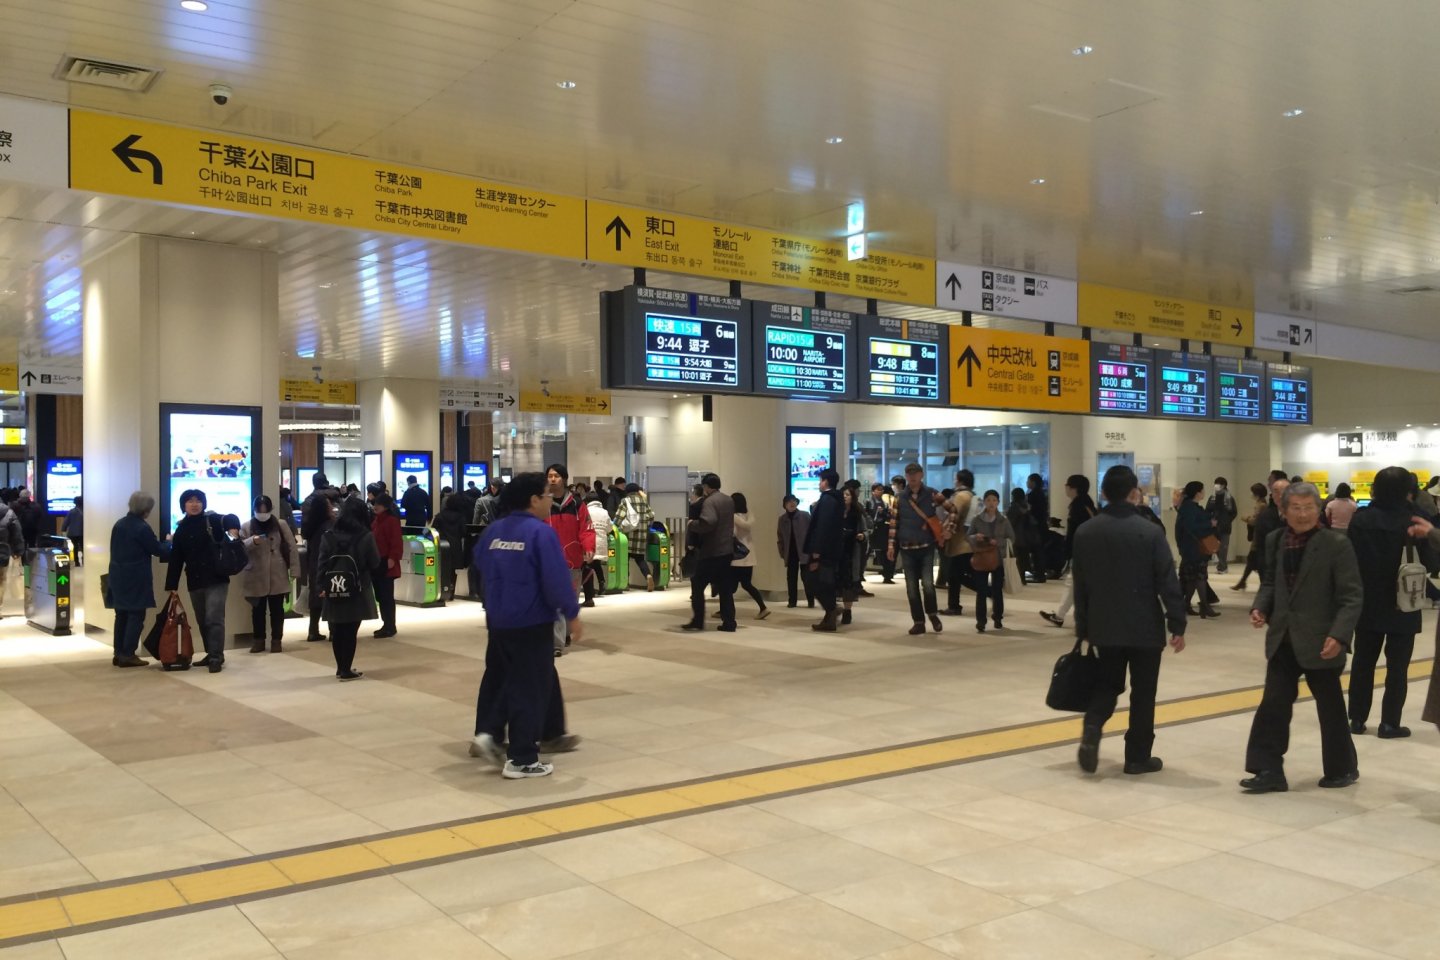 Khu vực mới của ga Shiba mở cửa vào 20/11 ở thành phố Chiba